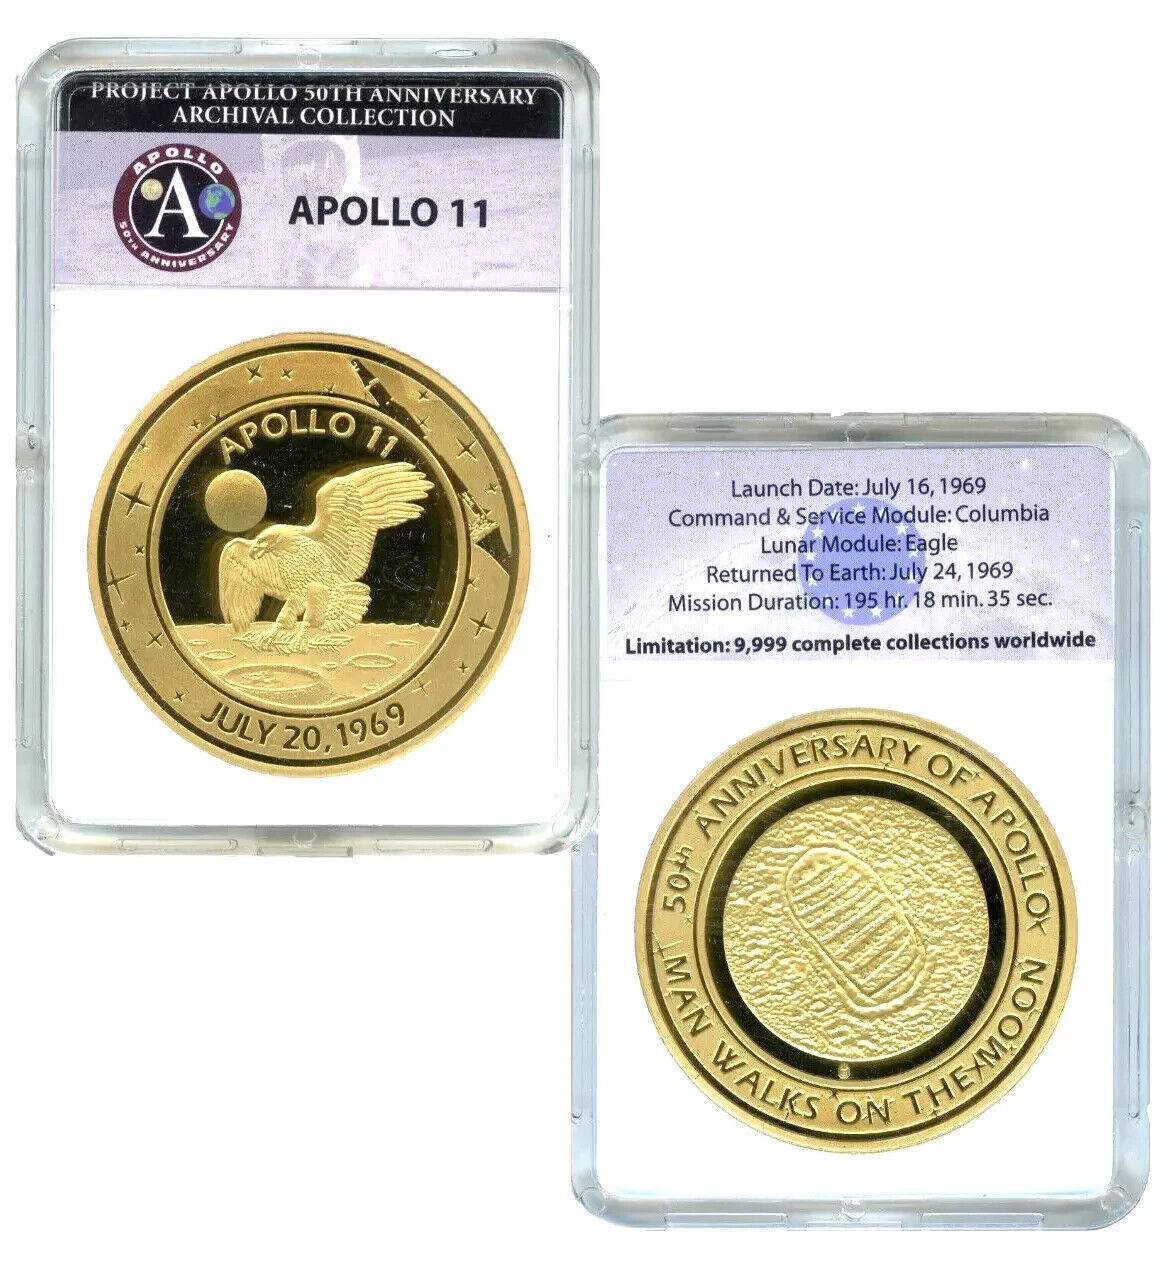 Apollo 11 50th Anniversary Archival Edition Commemorative Coin